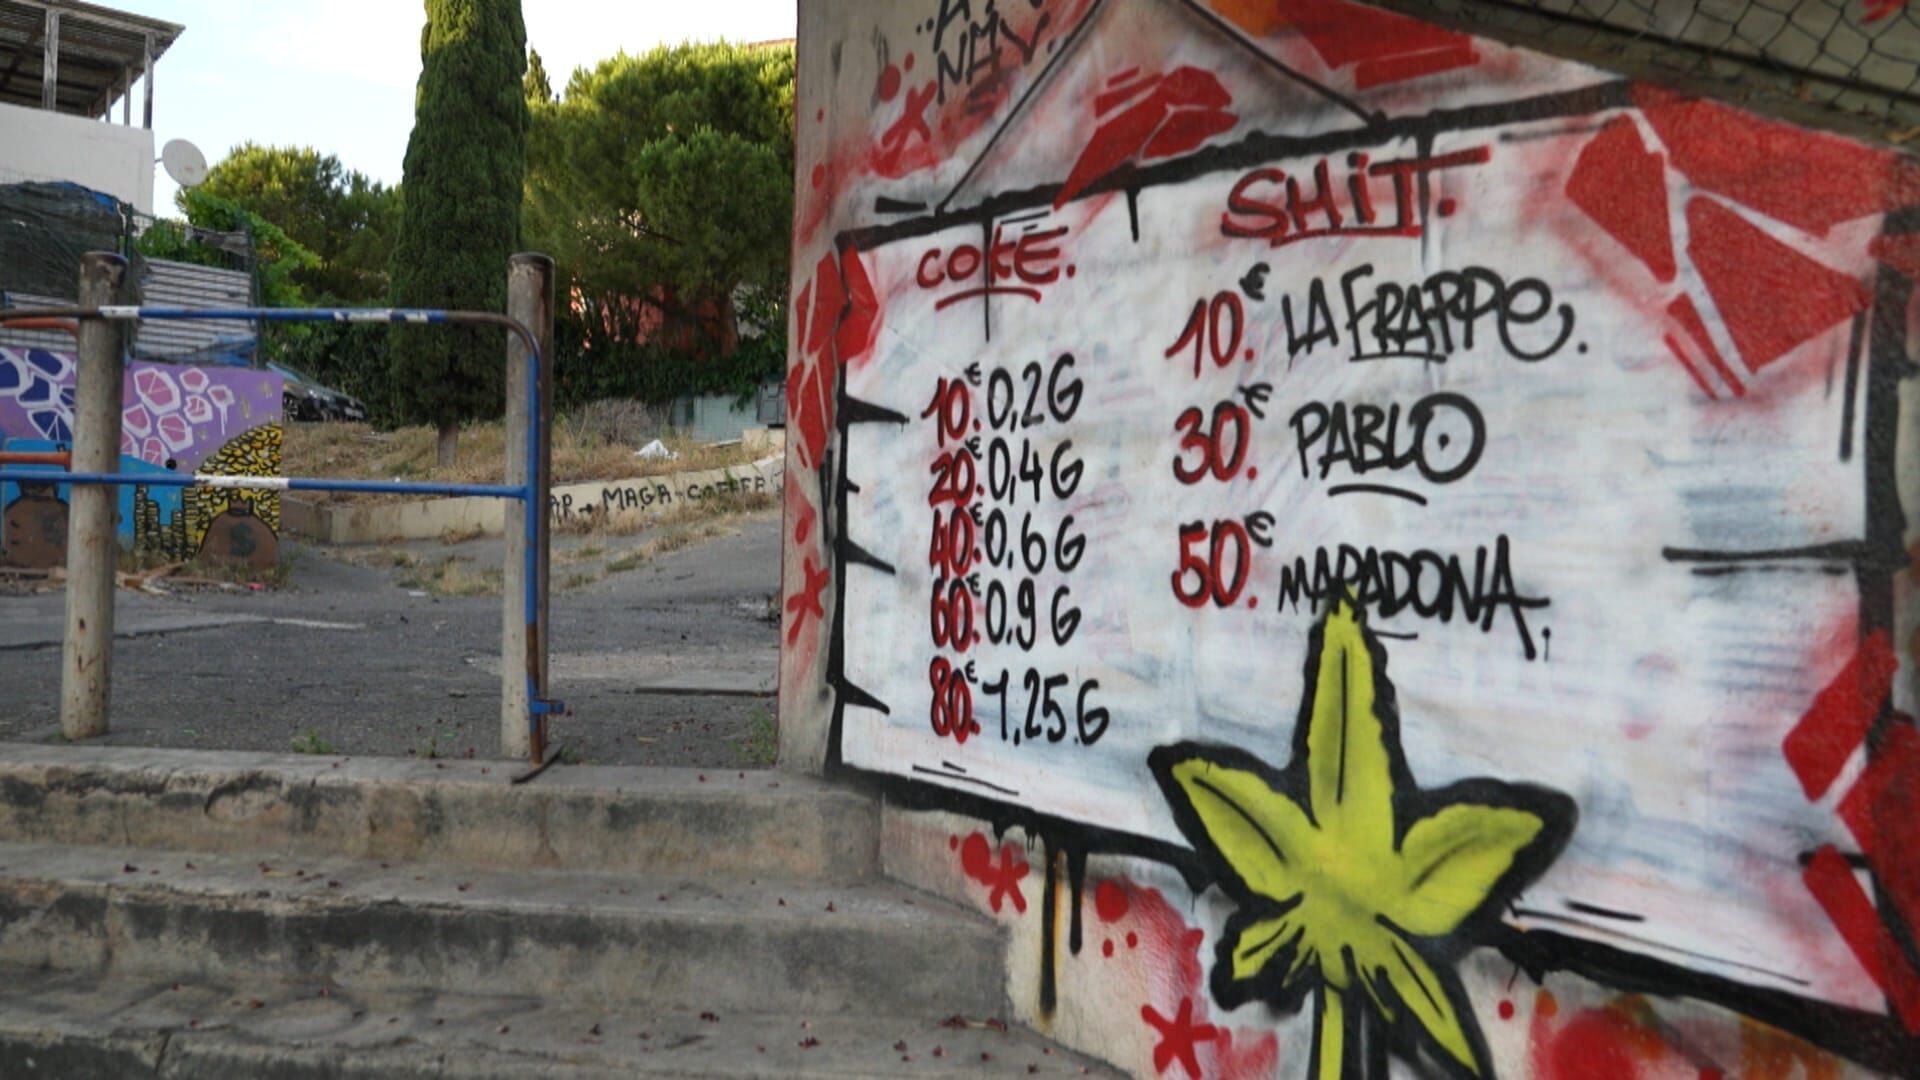 Die Gangs von Marseille – Drogenkrieg in Südfrankreich